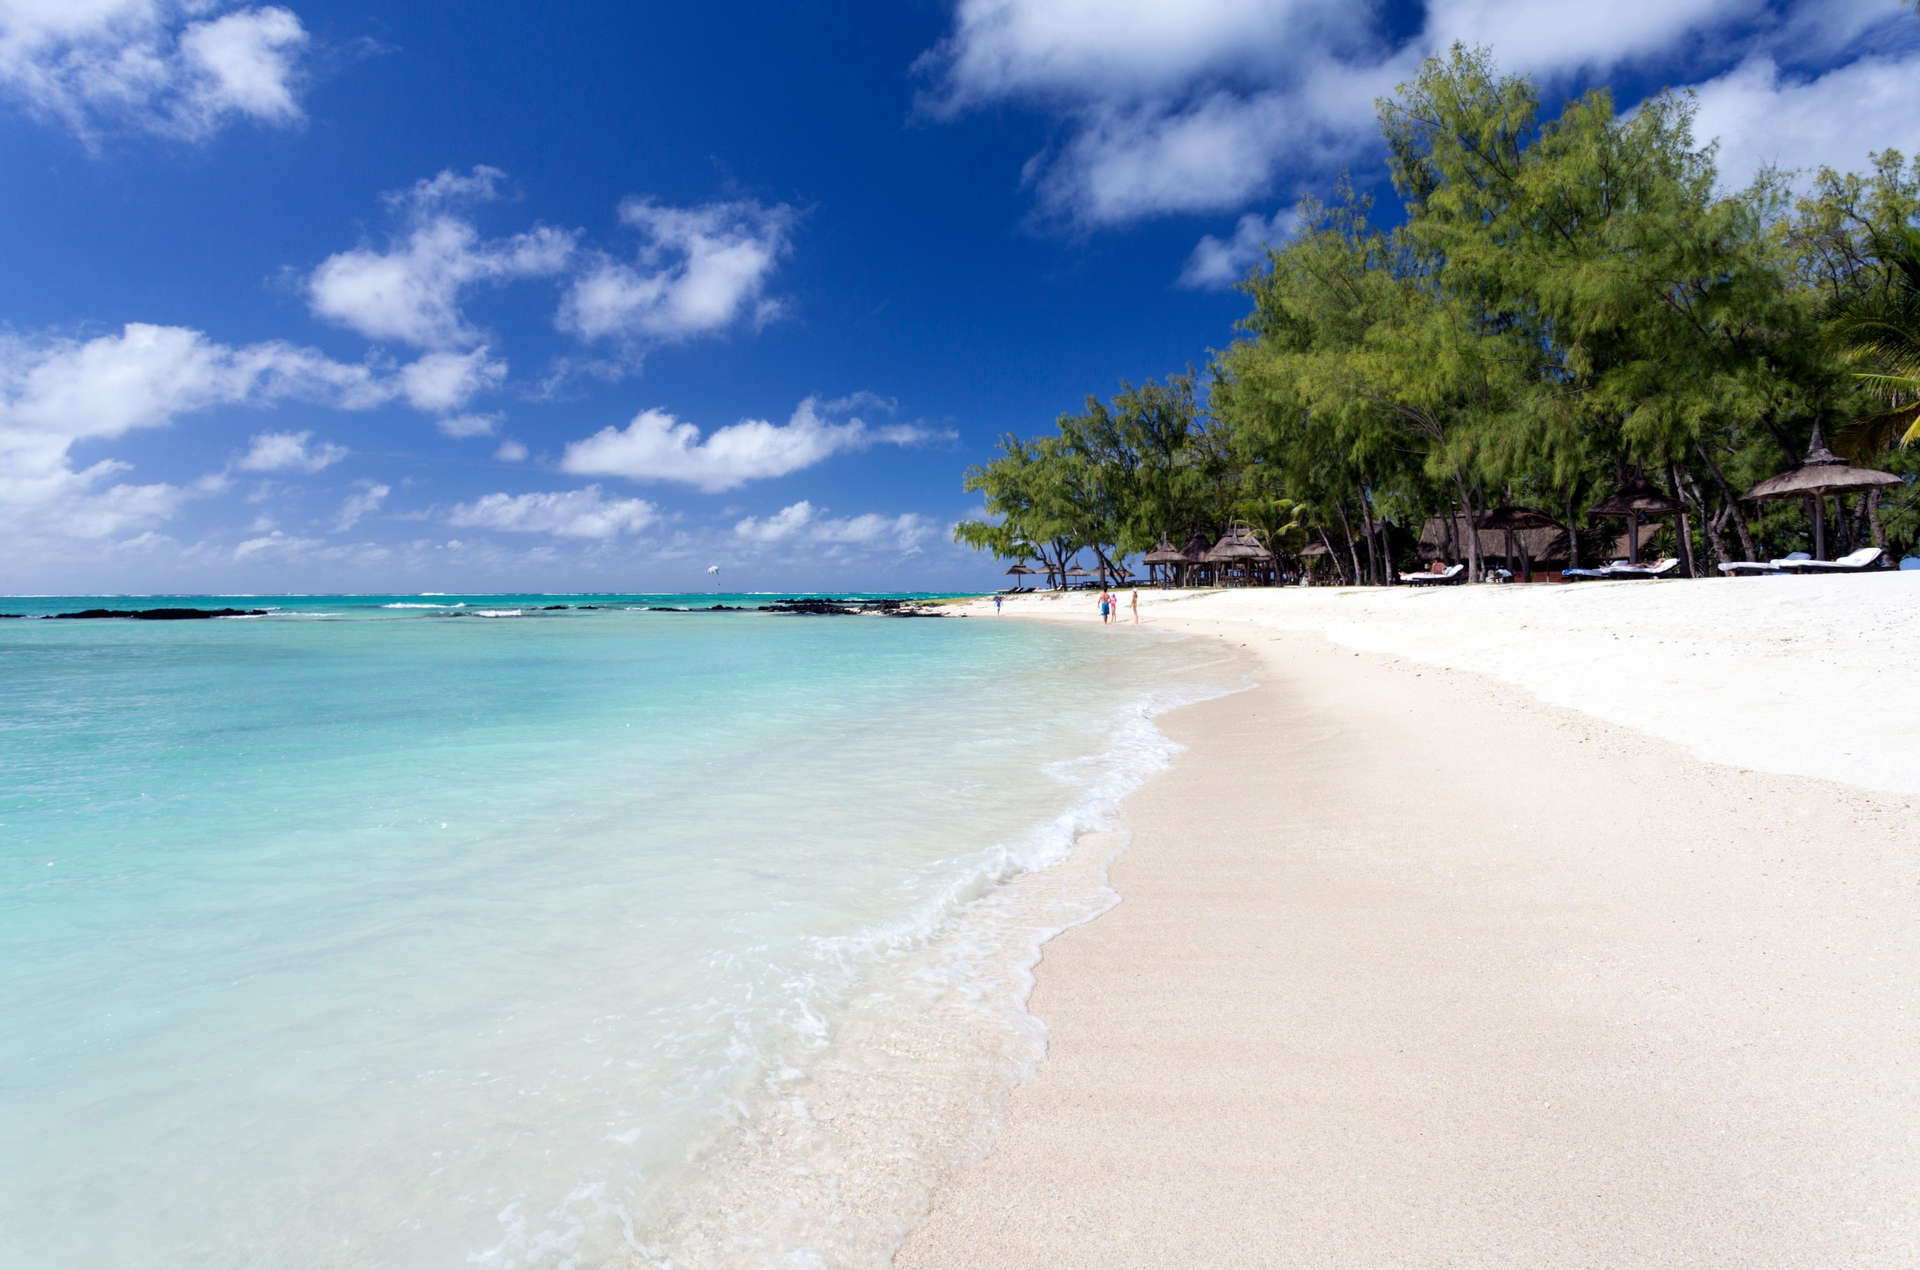 Una splendida spiaggia sull'isola di Mauritius